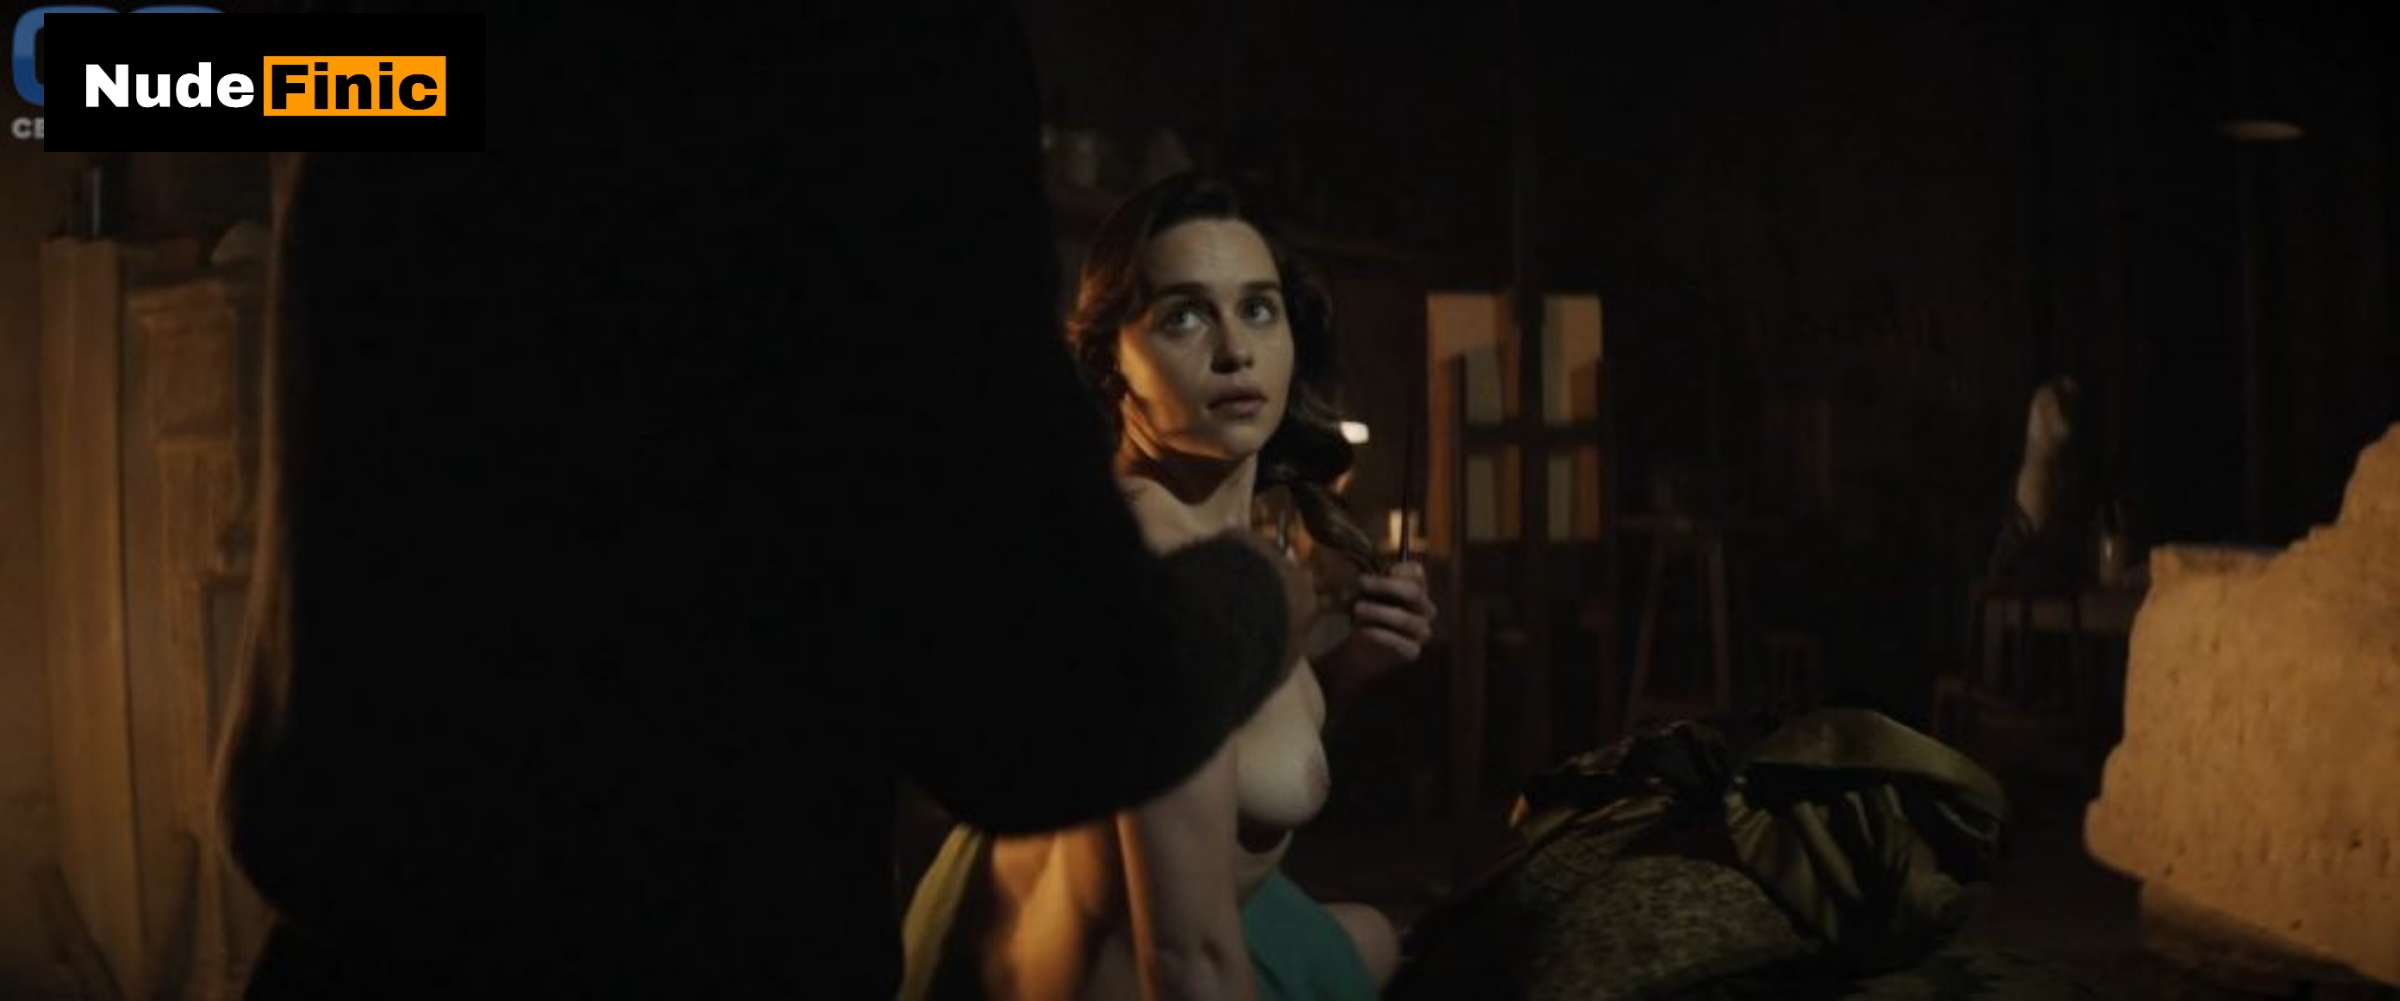 Emilia Clarke nude sex scenes images